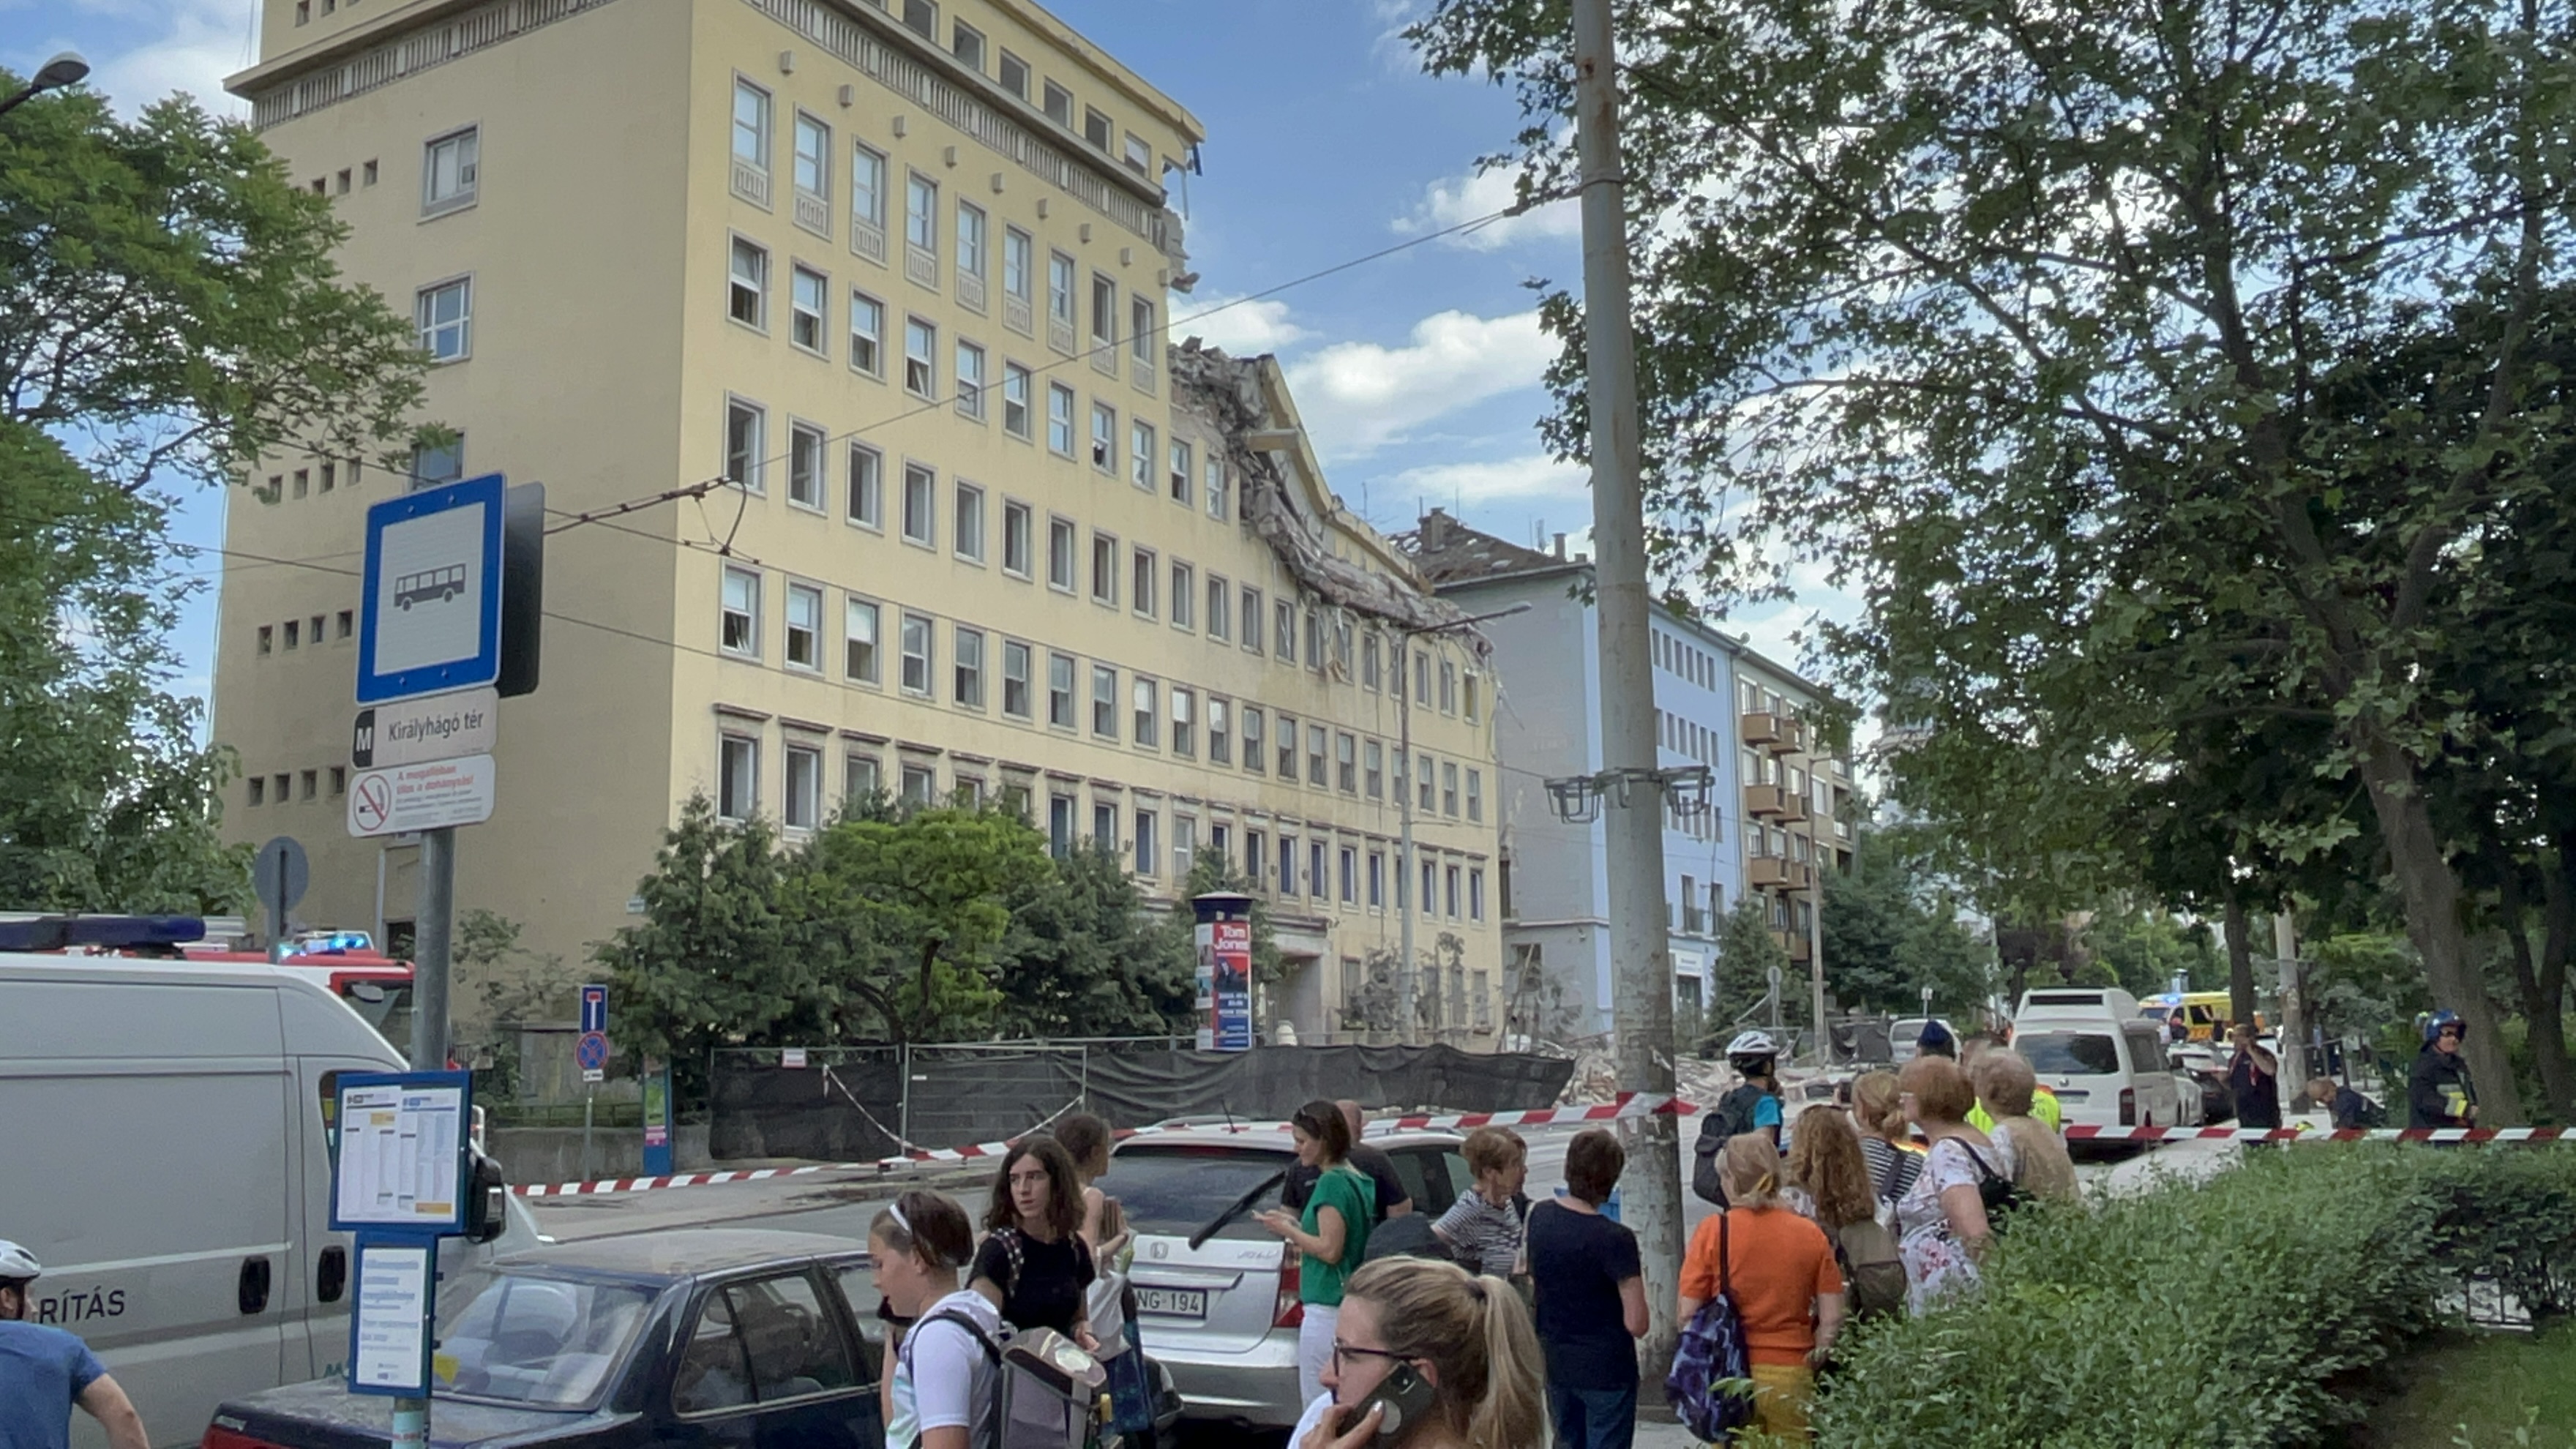 Hegyvidék: Ilyen látványosan a világháború óta nem omlott össze épület Budapesten